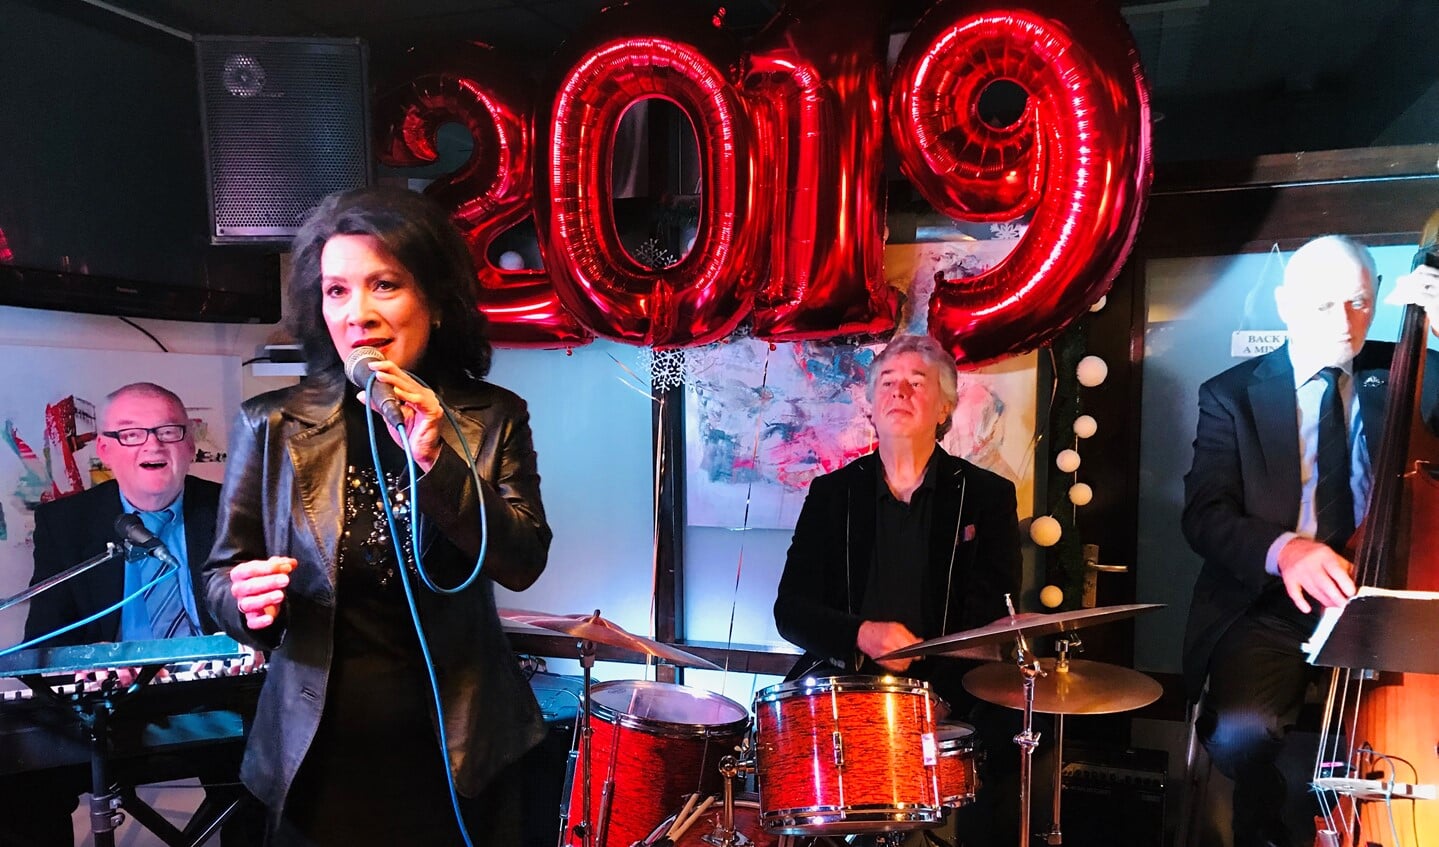 De laatste nieuwjaarsbijeenkomst van Blaricum was in 2019 in de Blaercom.